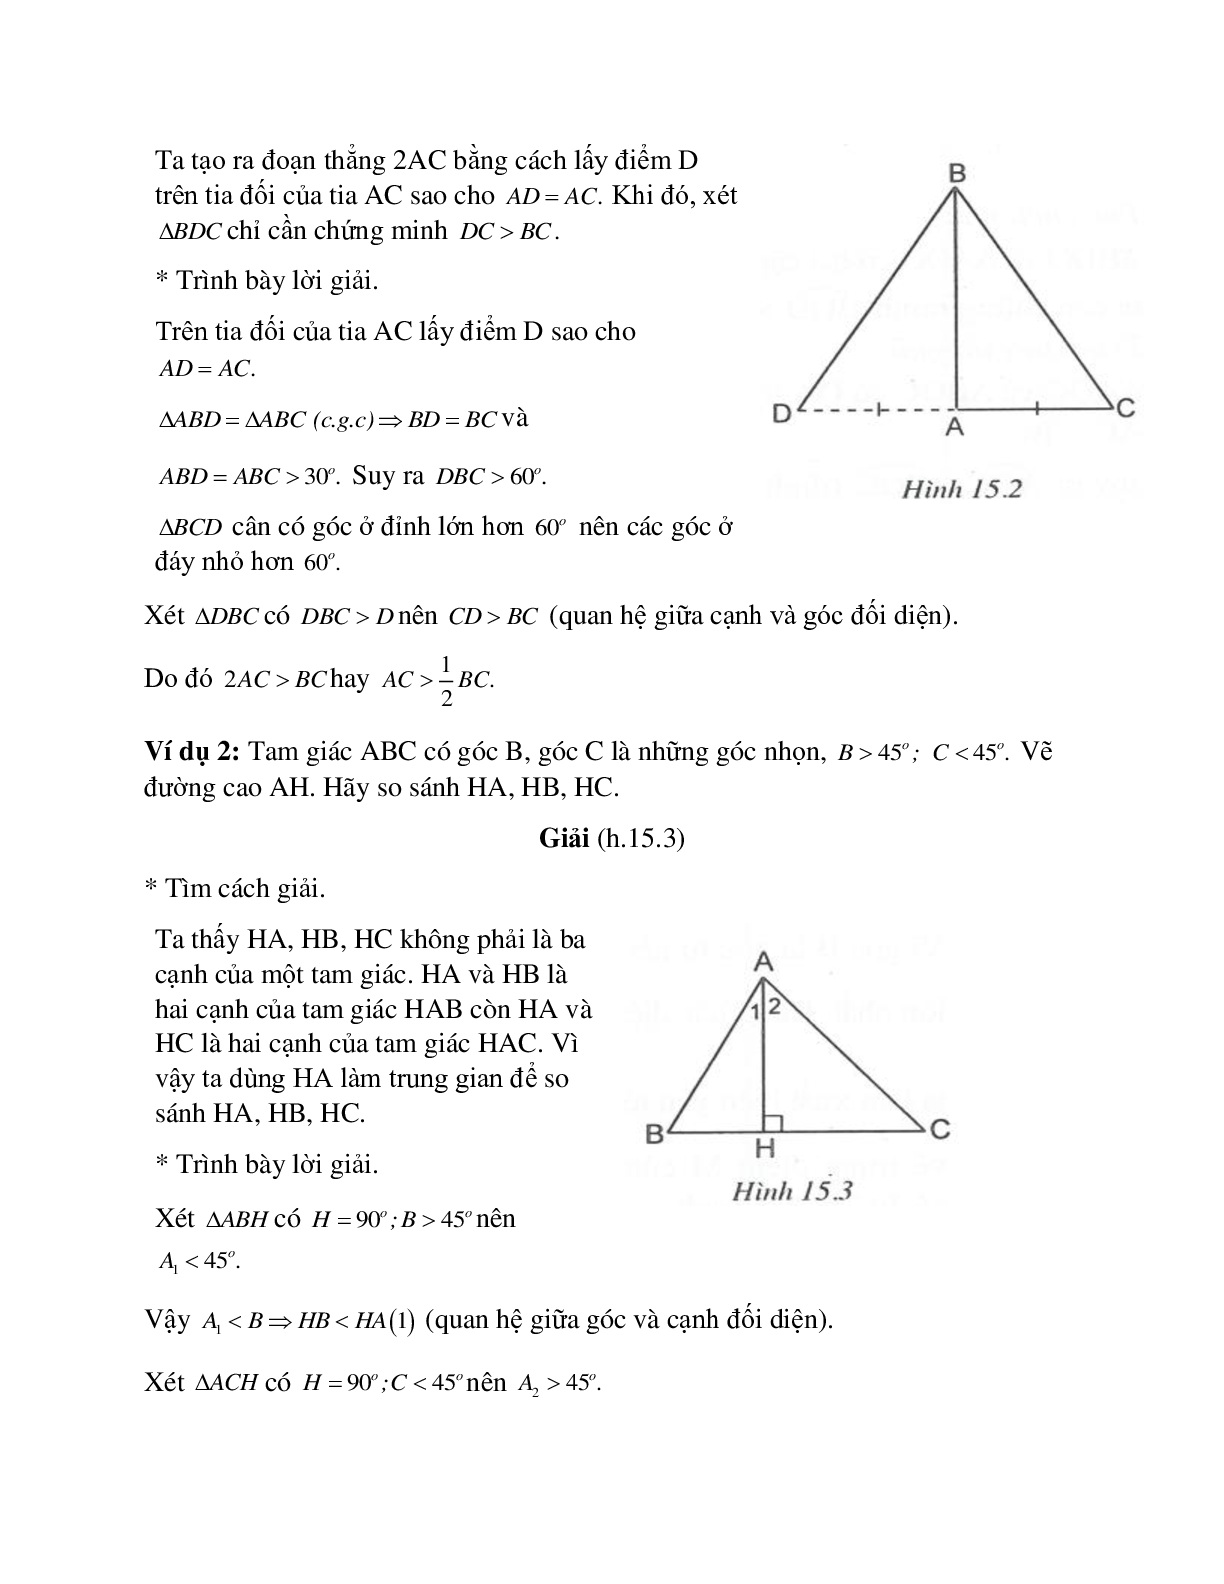 Phương pháp giải bài tập về Quan hệ giữa góc và cạnh đối diện trong một tam giác chọn lọc (trang 2)